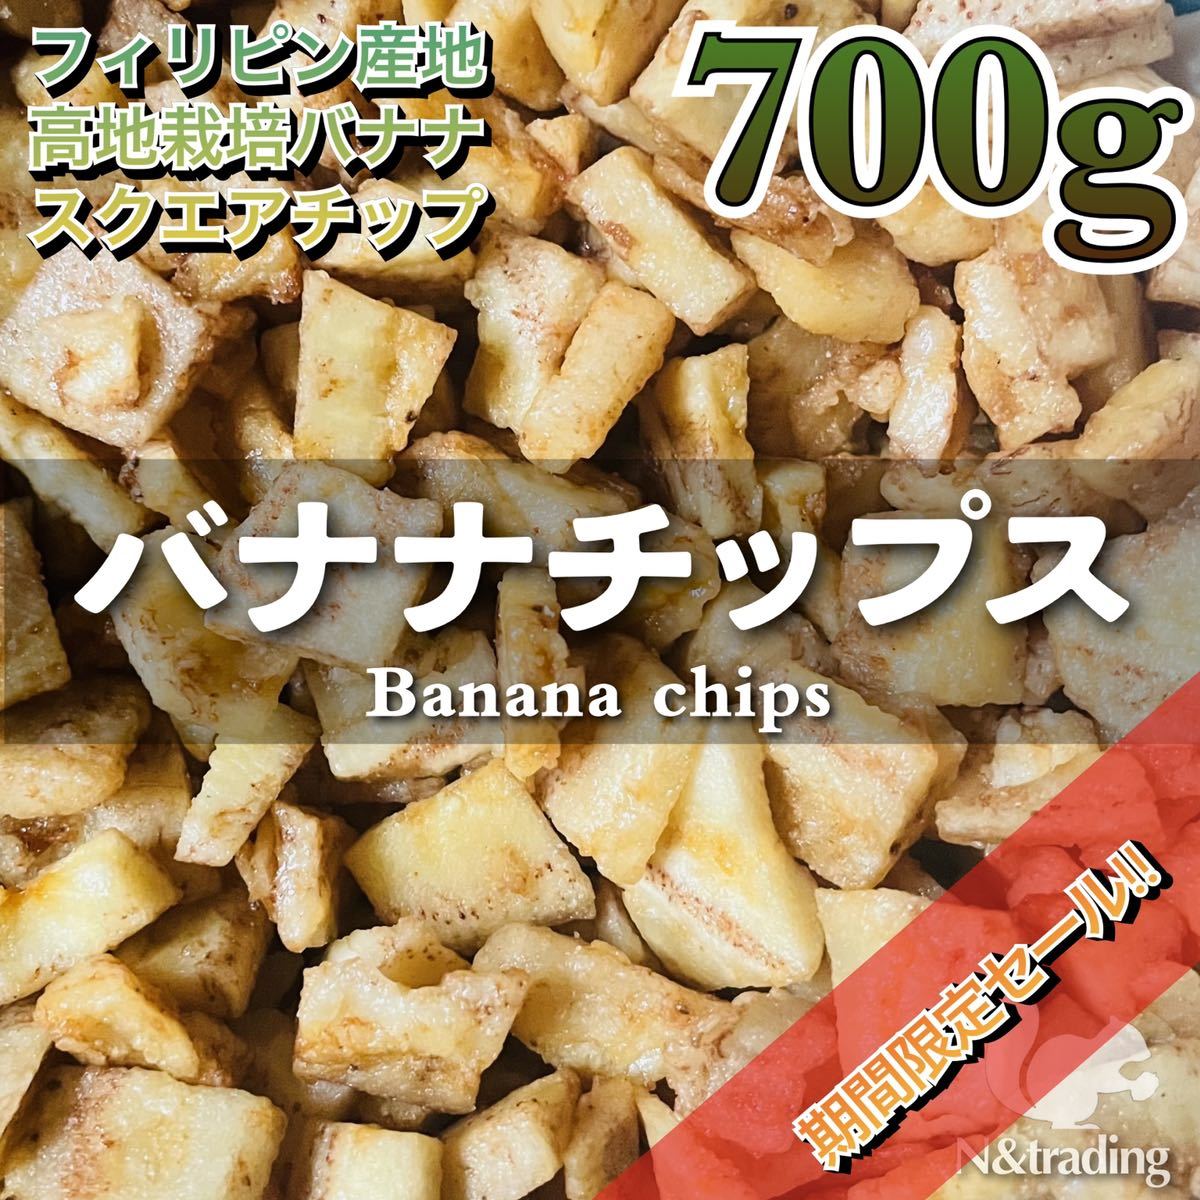 バナナチップス スクエアカット 700g /フィリピン産 高知栽培バナナ使用 /ntddr01_画像1